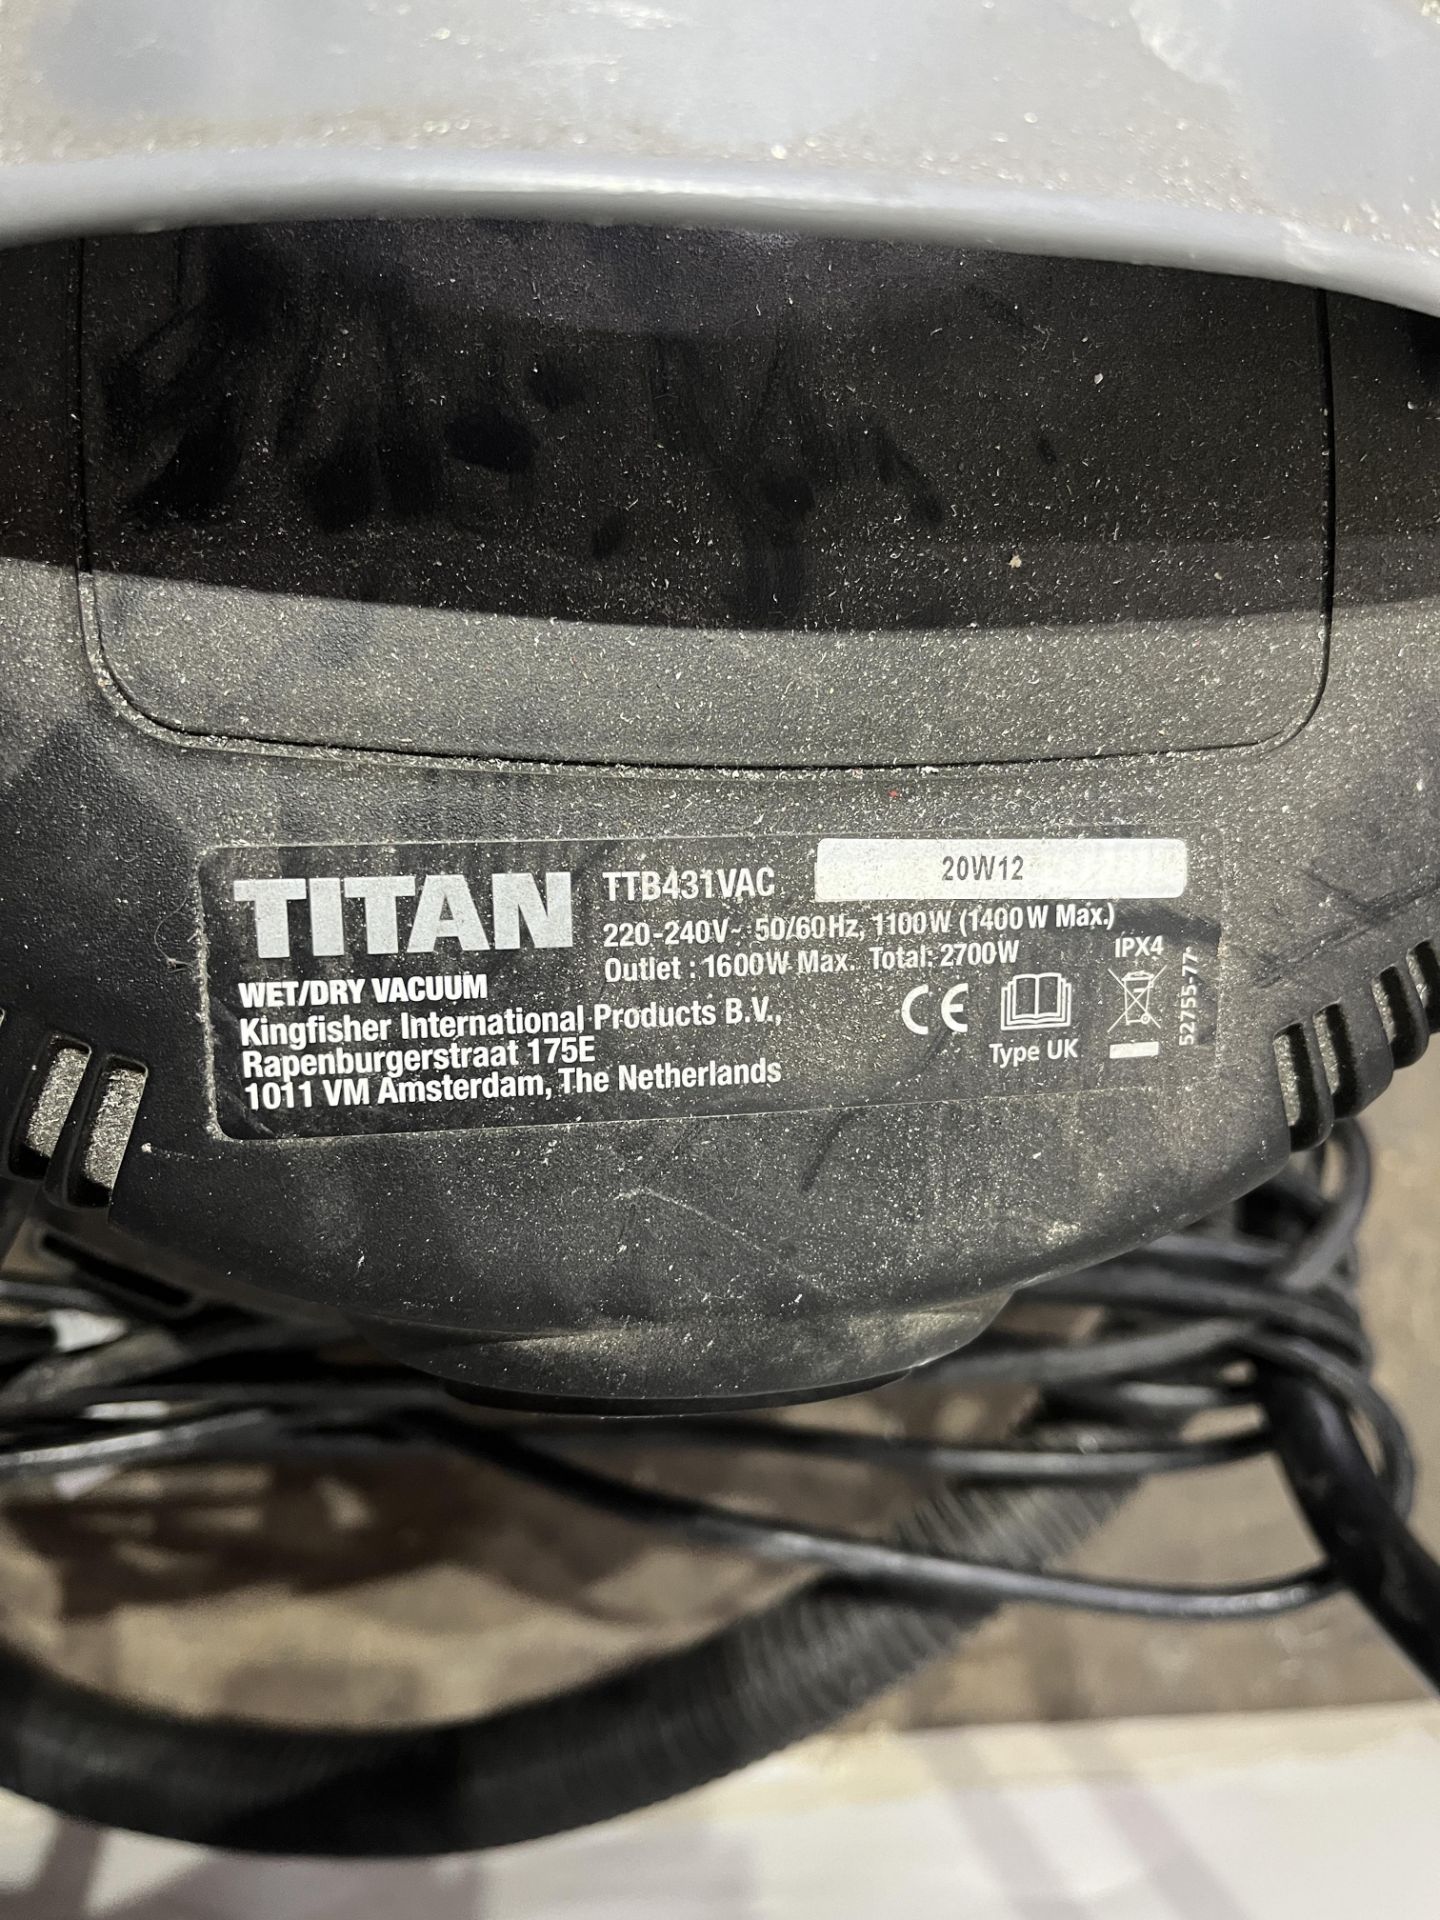 Titan Wet/Dry Vacuum - Image 5 of 5